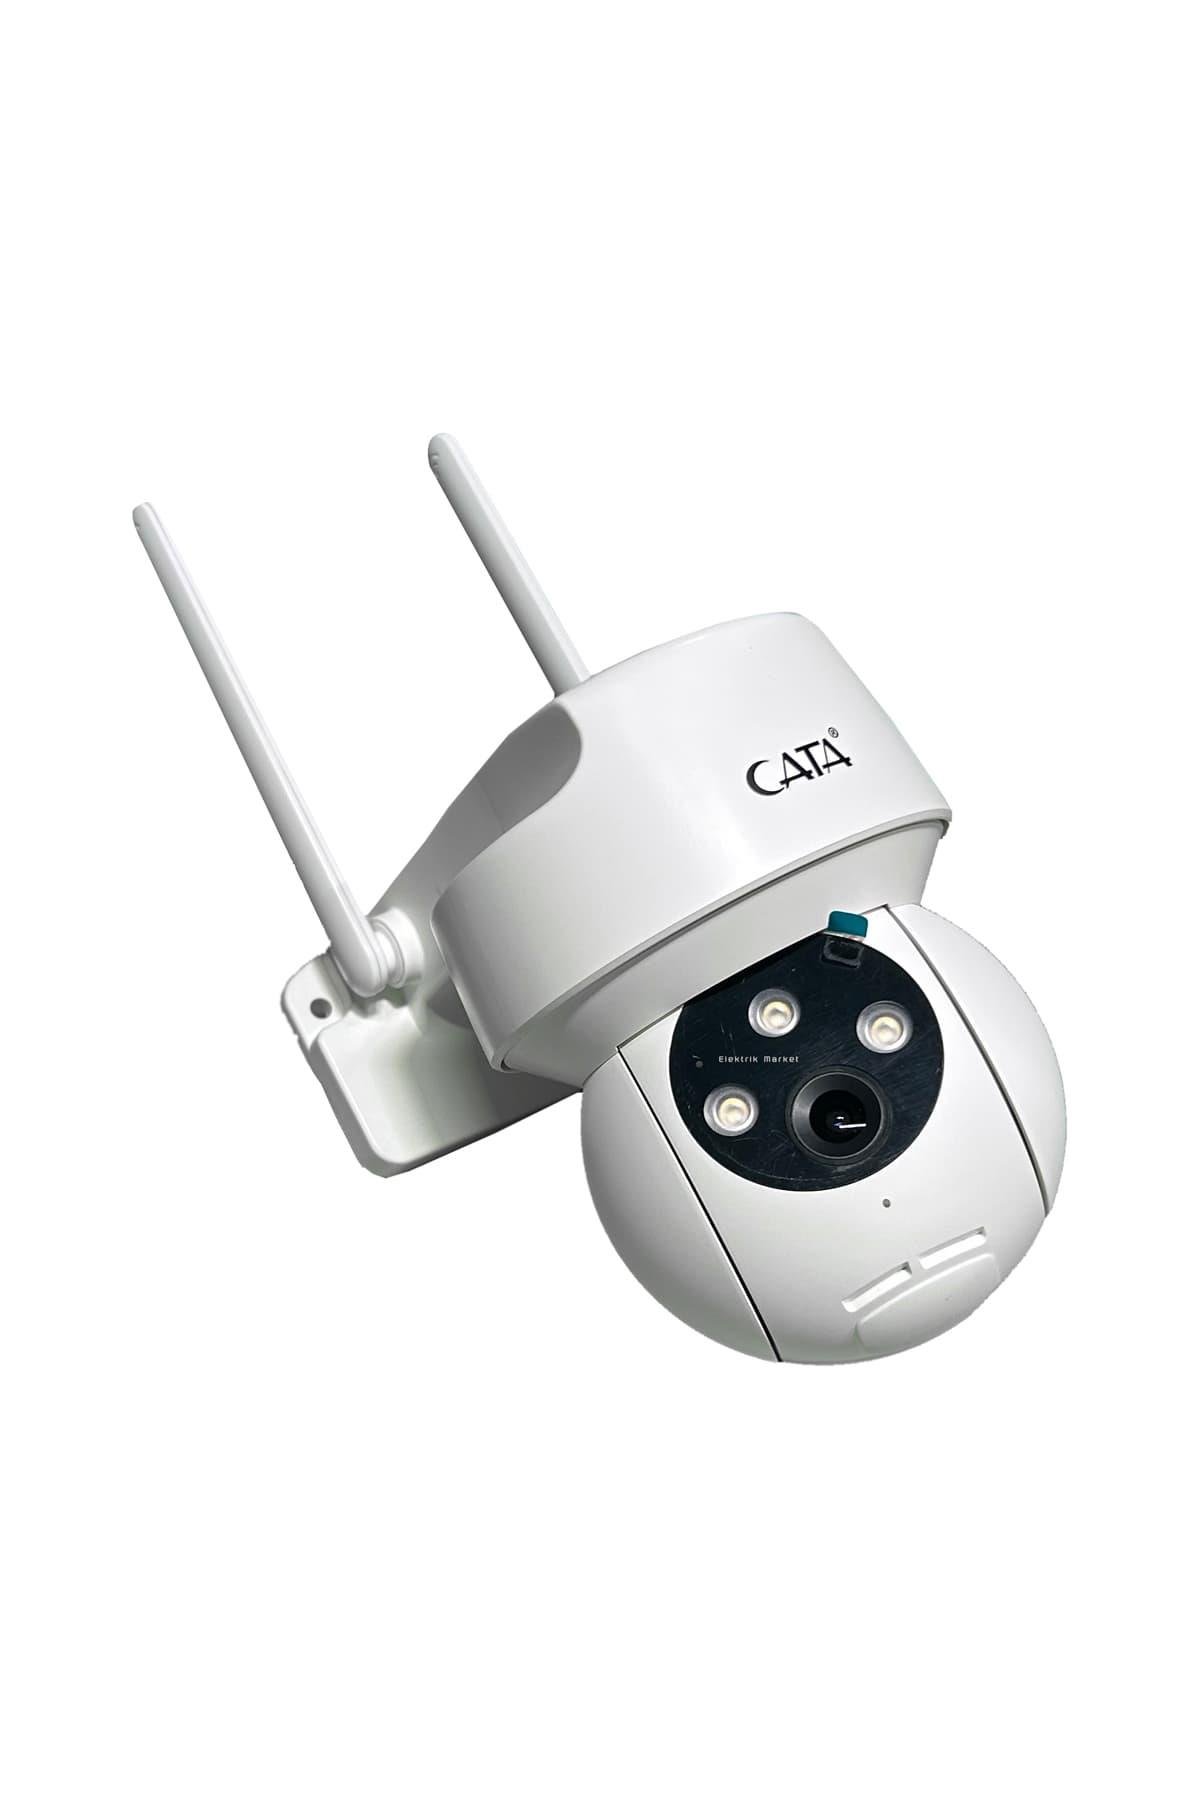 Cata Dış Mekan Akıllı Kamera IP 66 Gece Görüşlü ( Full Hd-1080P ) Ct 4051  Güvenlik Kamerası | Aydınlatmacım